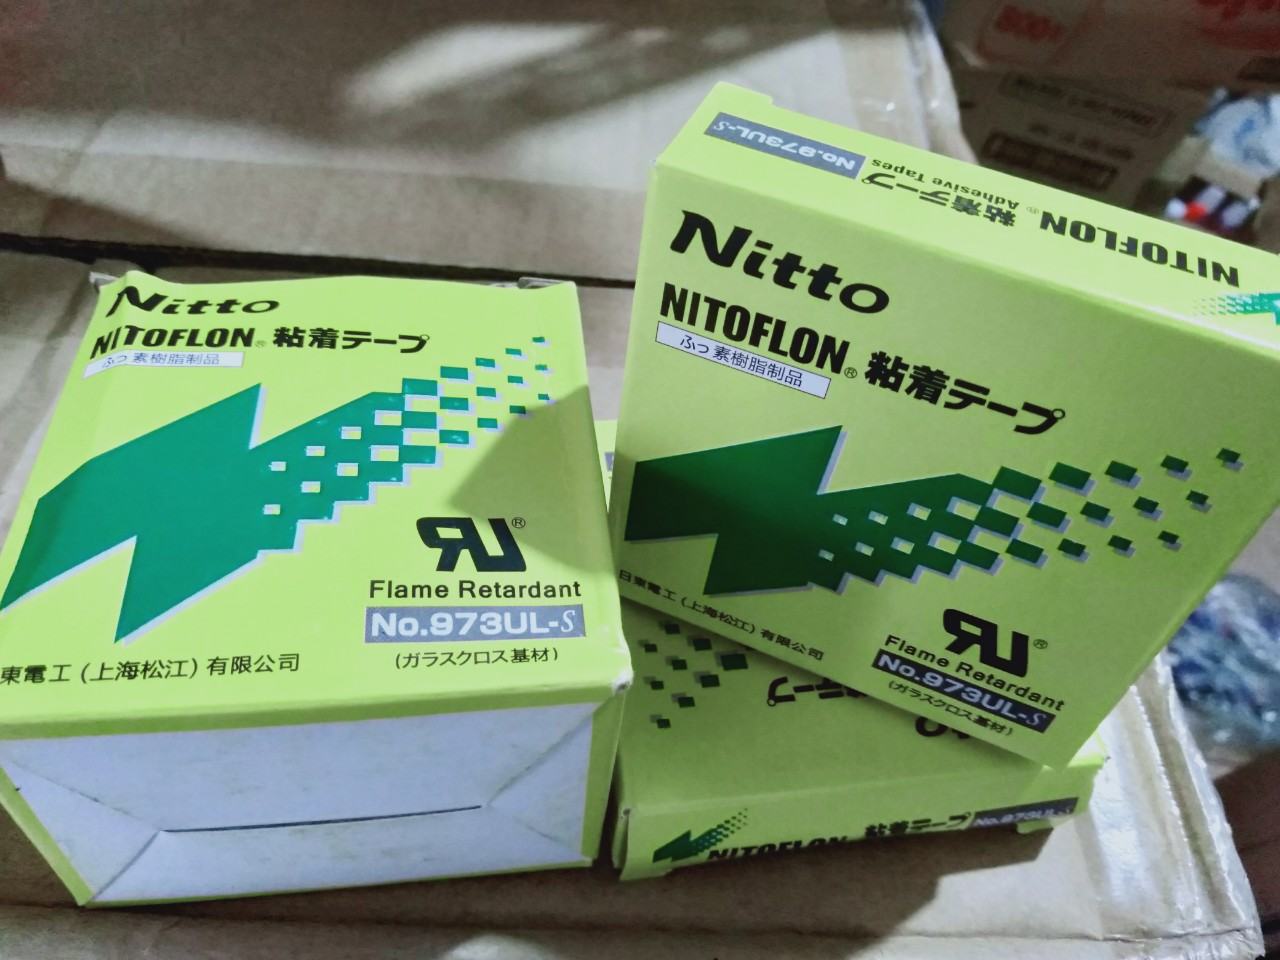 Sỉ lẻ băng dính chịu nhiệt Nitto chính hãng tại Hà Nội.